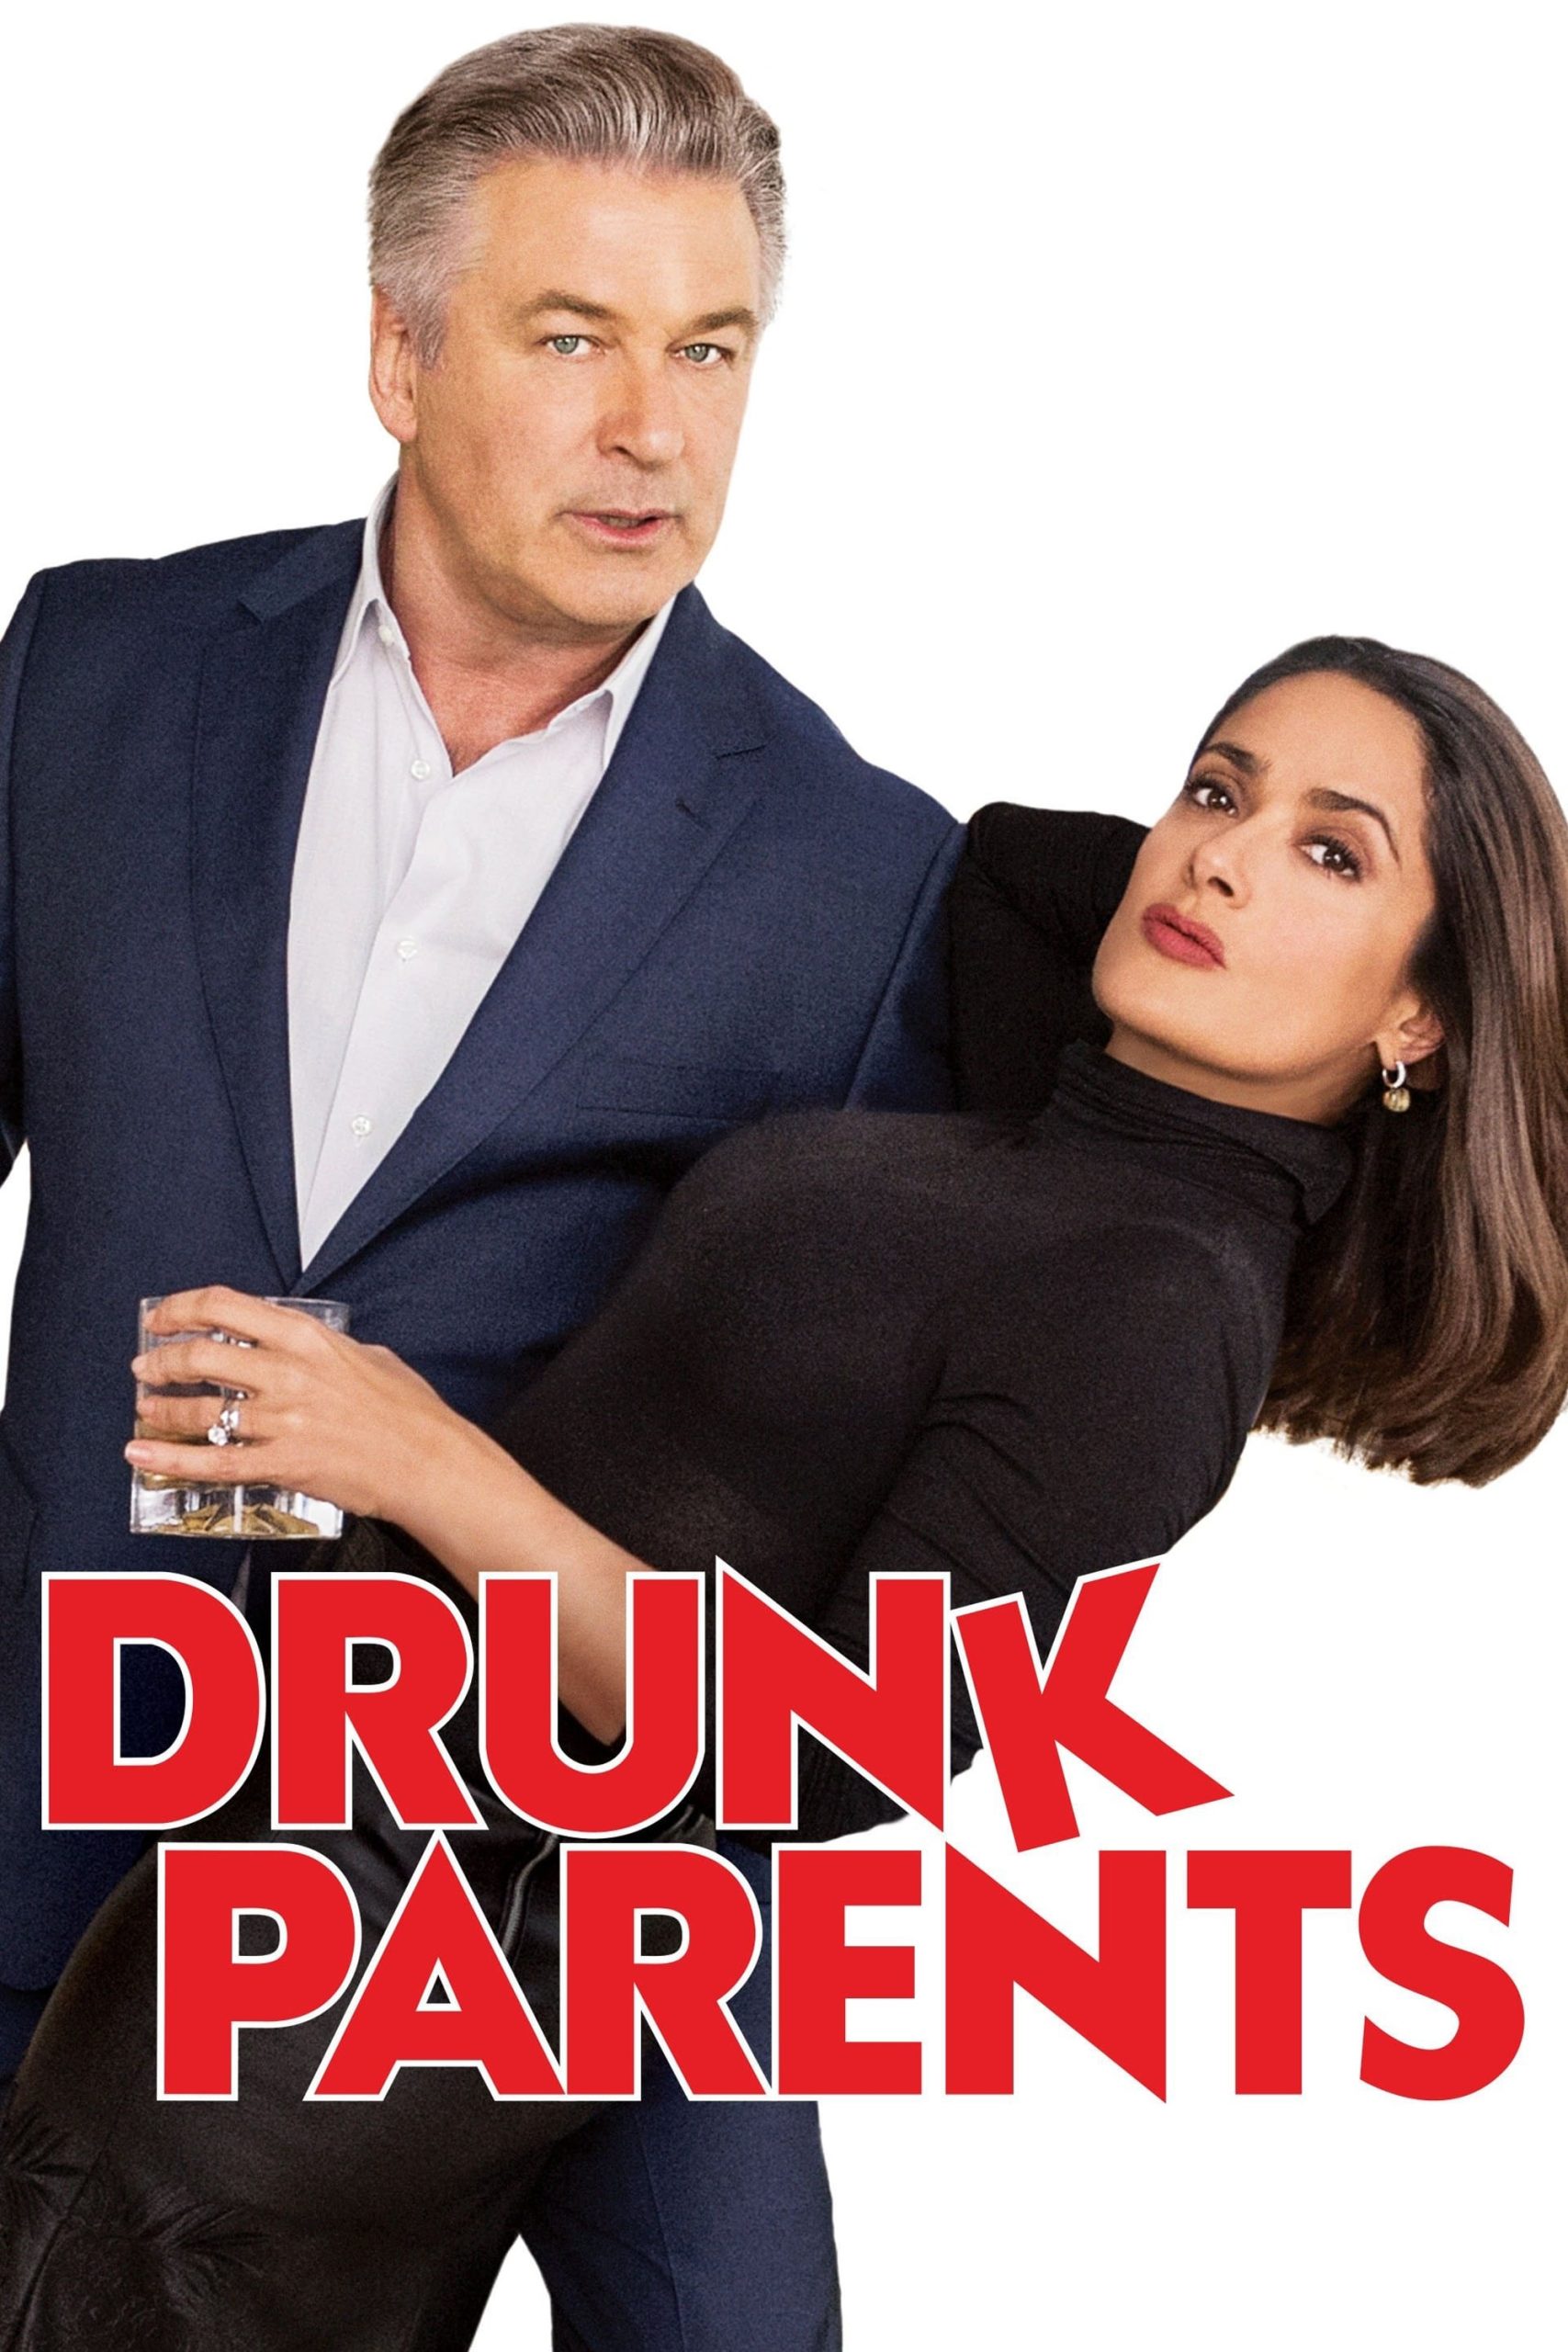 ดูหนังออนไลน์ Drunk Parents ผู้ปกครองสายเมา